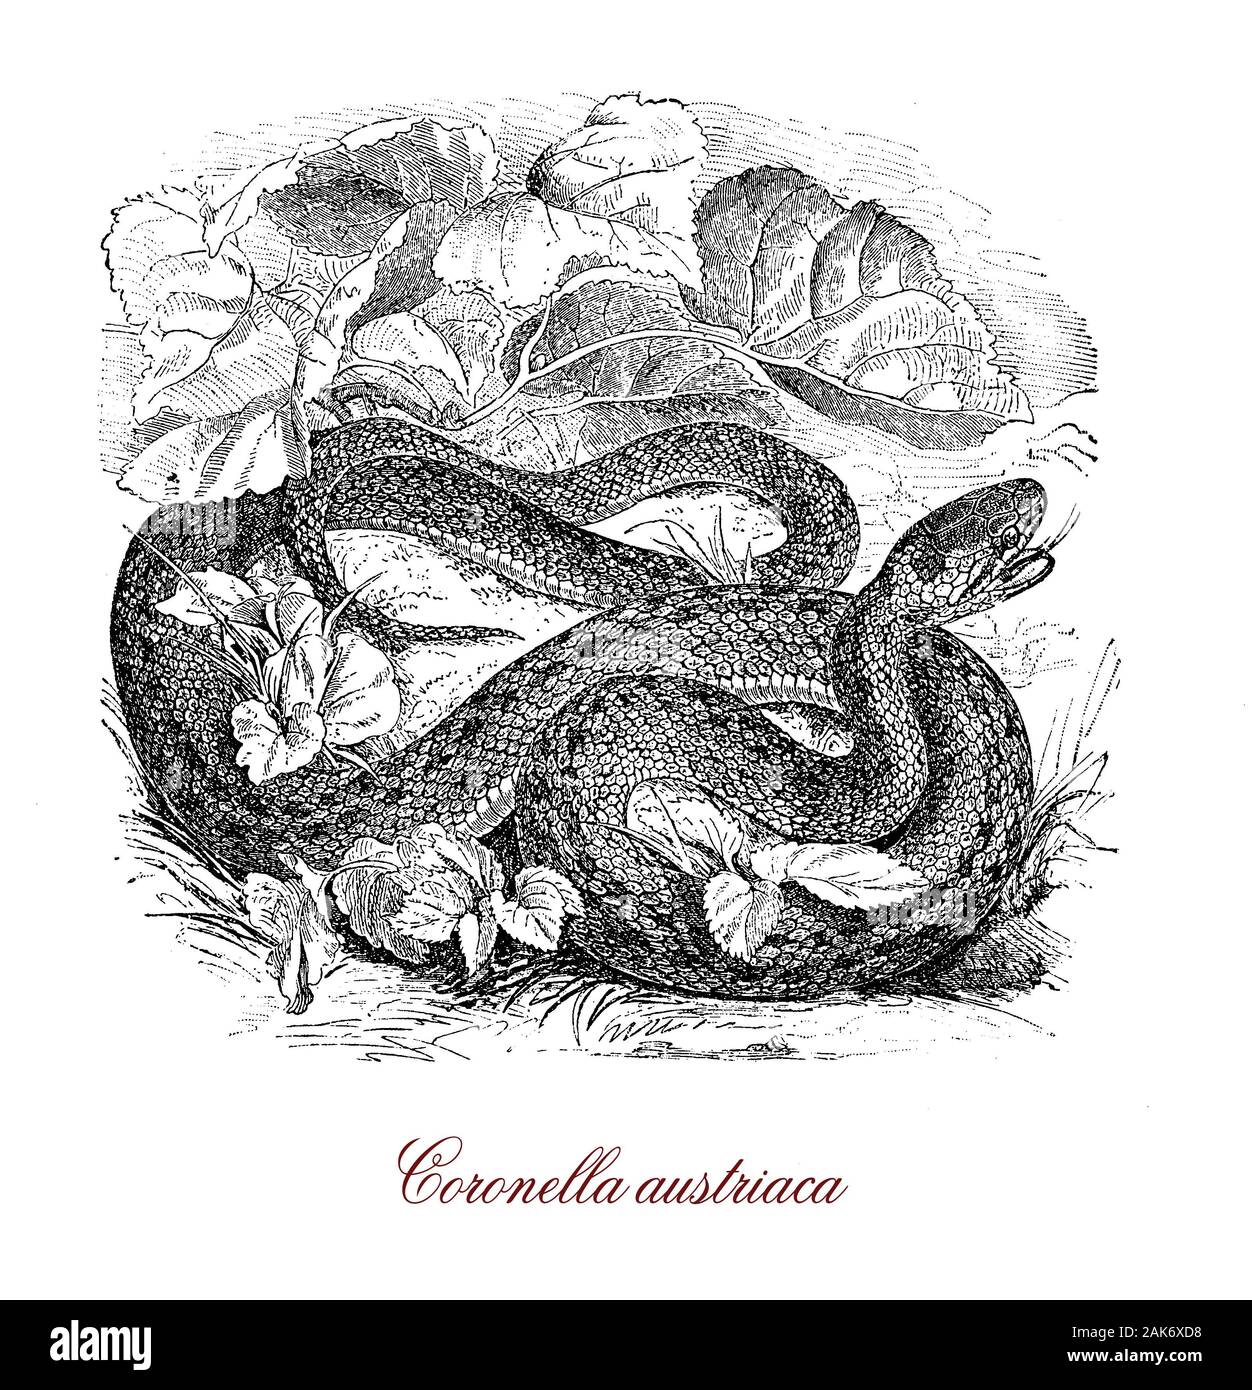 Couleuvre lisse ou Coronella austriaca serpent non venimeux originaire d'Europe du nord et centrale, atteint une longueur maximale de 60 cm., a une échelle rostrale sur la tête et la peau a une texture lisse Banque D'Images